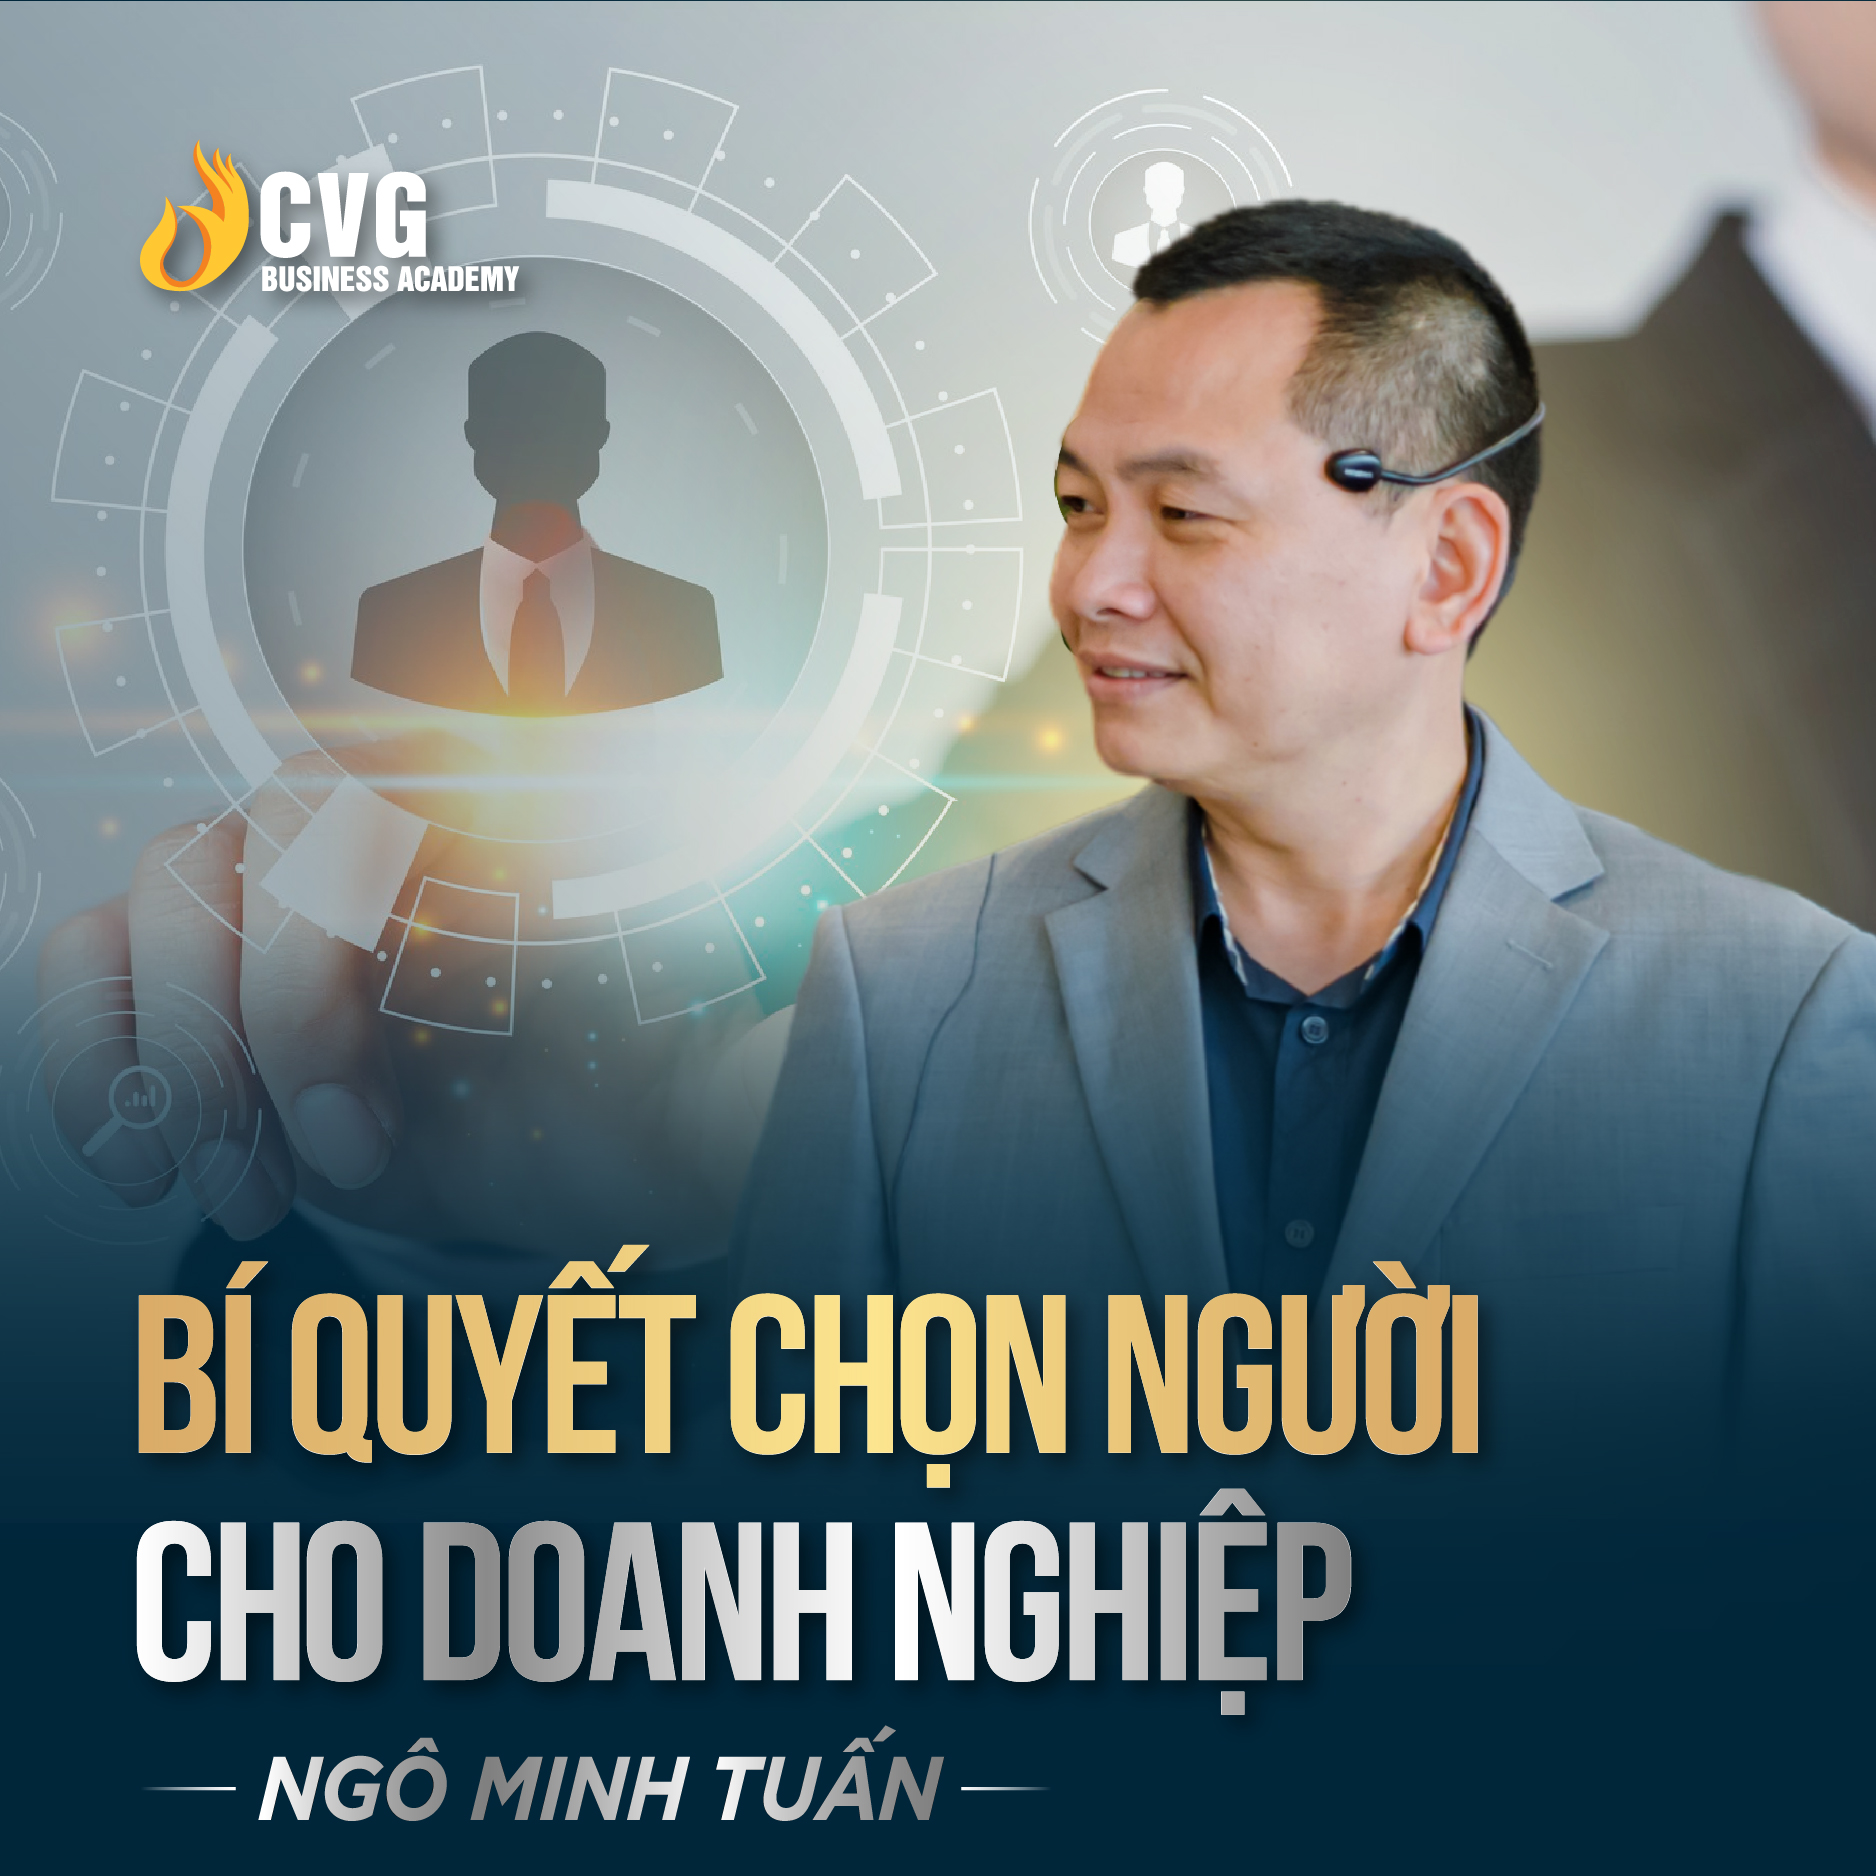 BÍ QUYẾT CHỌN NGƯỜI CHO DOANH NGHIỆP | Ngô Minh Tuấn | Học Viện CEO Việt Nam Global